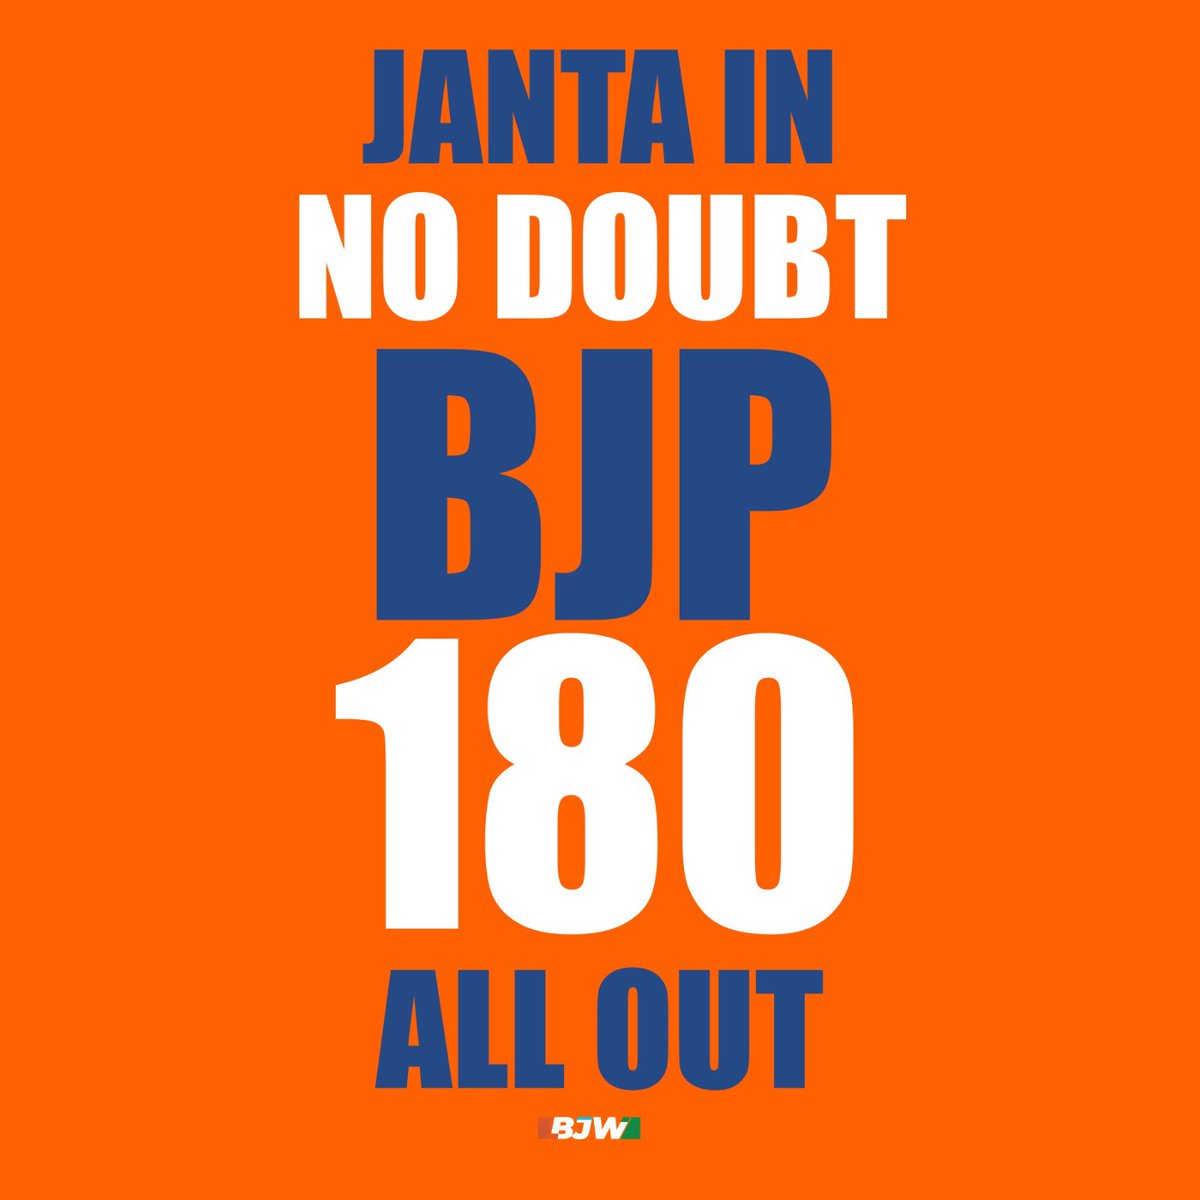 Janta in no doubt 
BJP 180 all out 
 #MatchFixingNahiChalegi